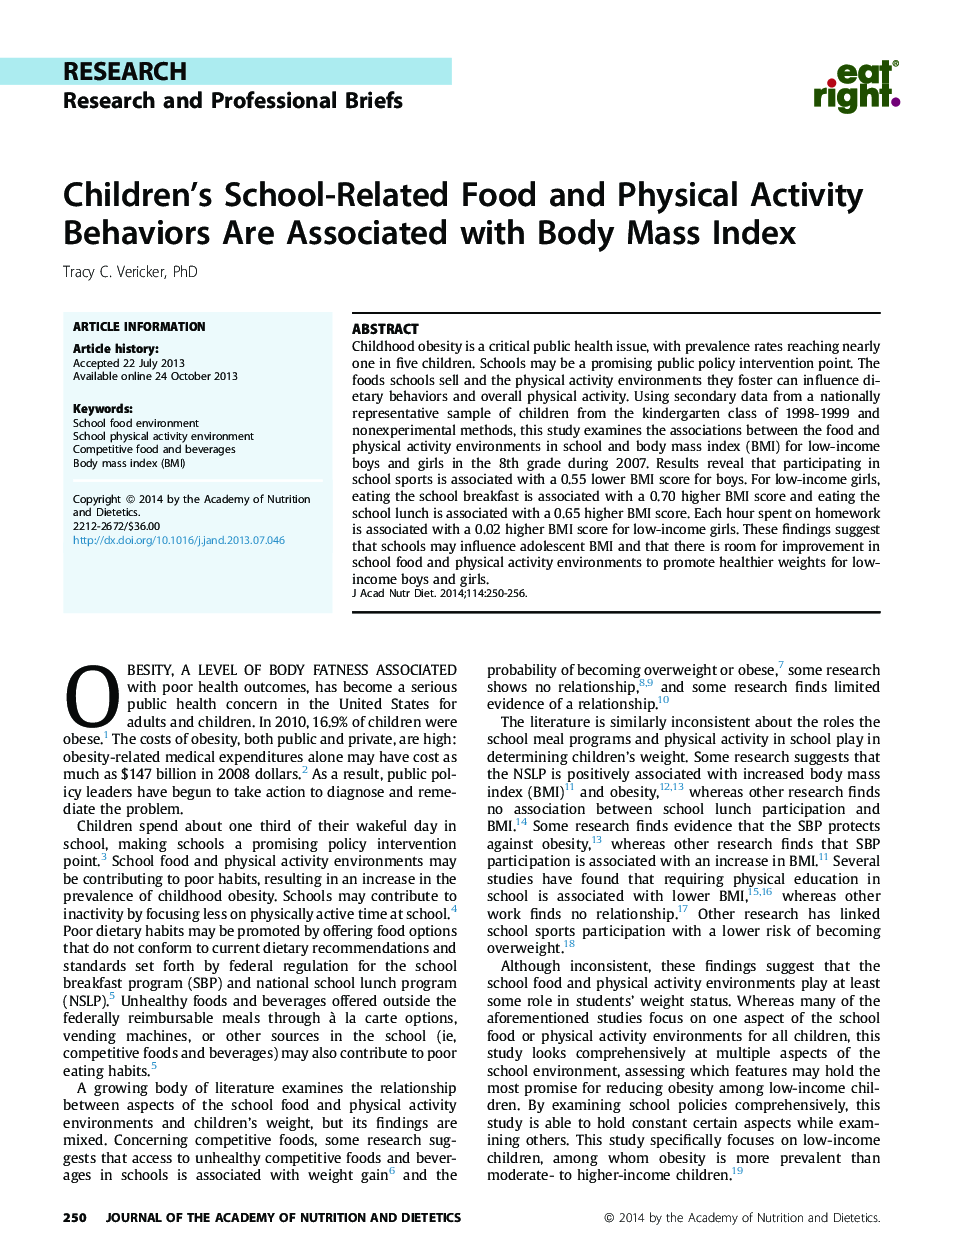 رفتارهای تغذیه ای و رفتارهای جسمانی مرتبط با مدرسه وابسته به شاخص توده بدنی است 